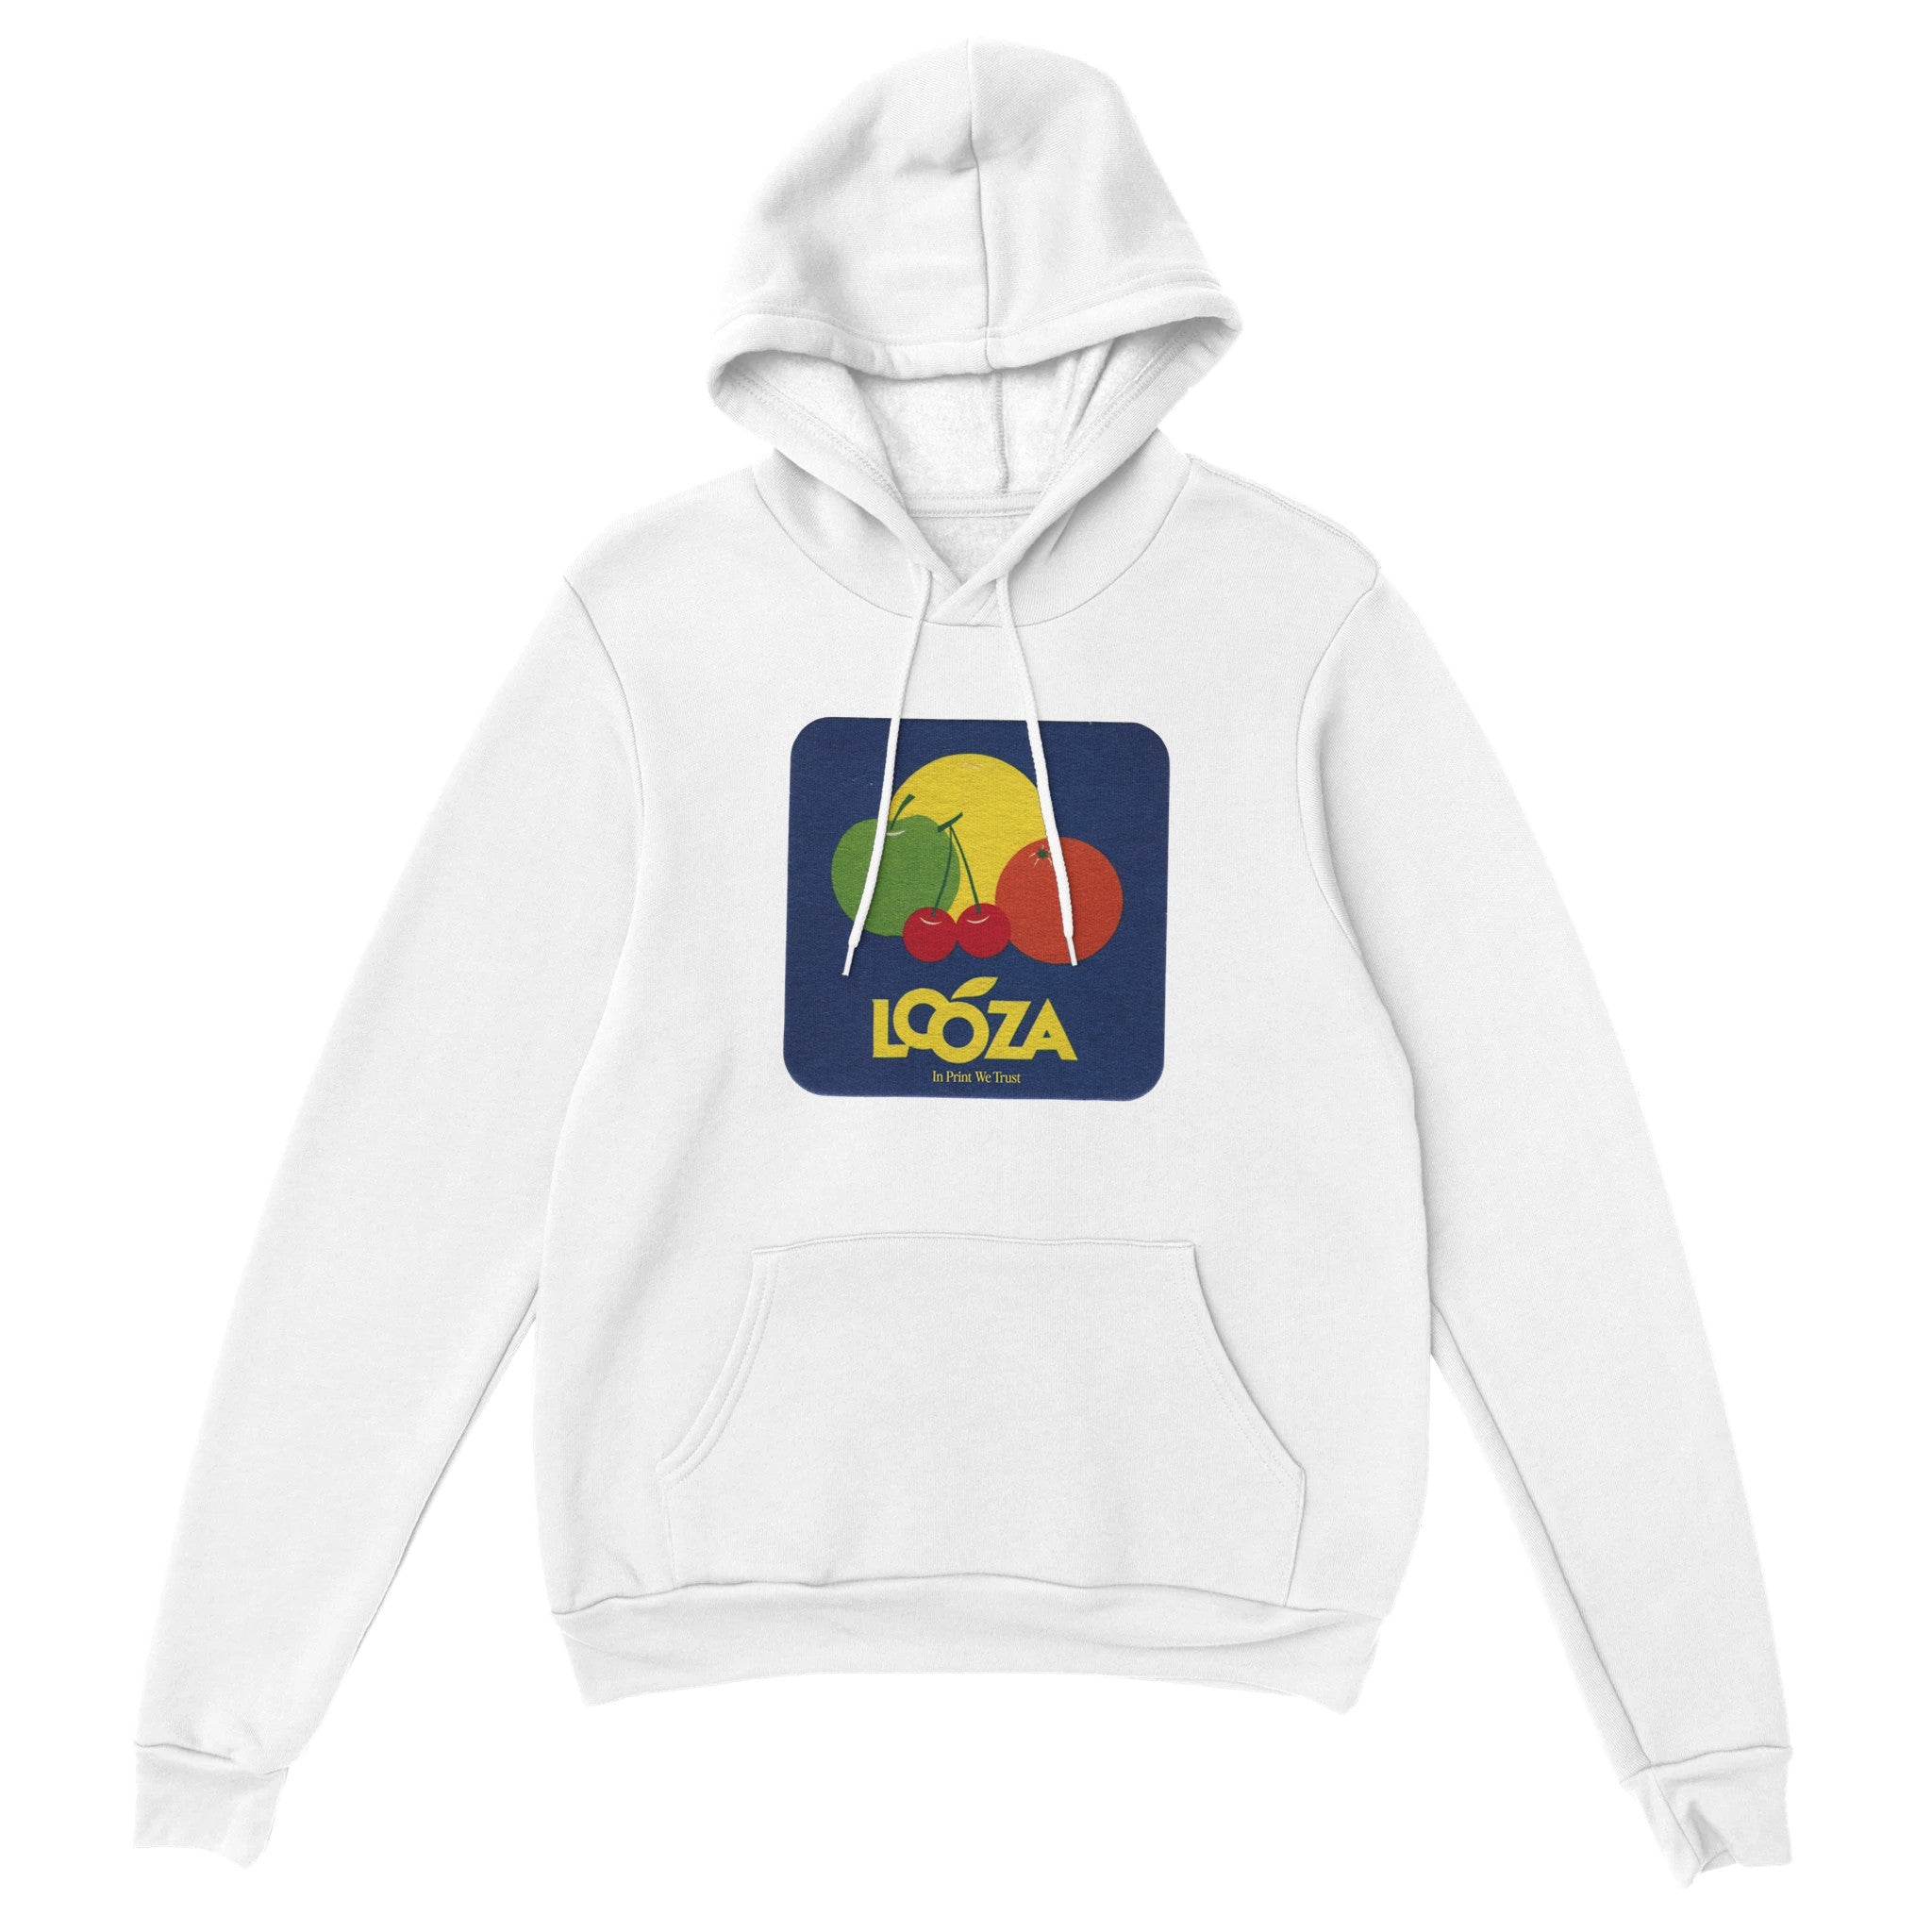 'Looza' hoodie - In Print We Trust